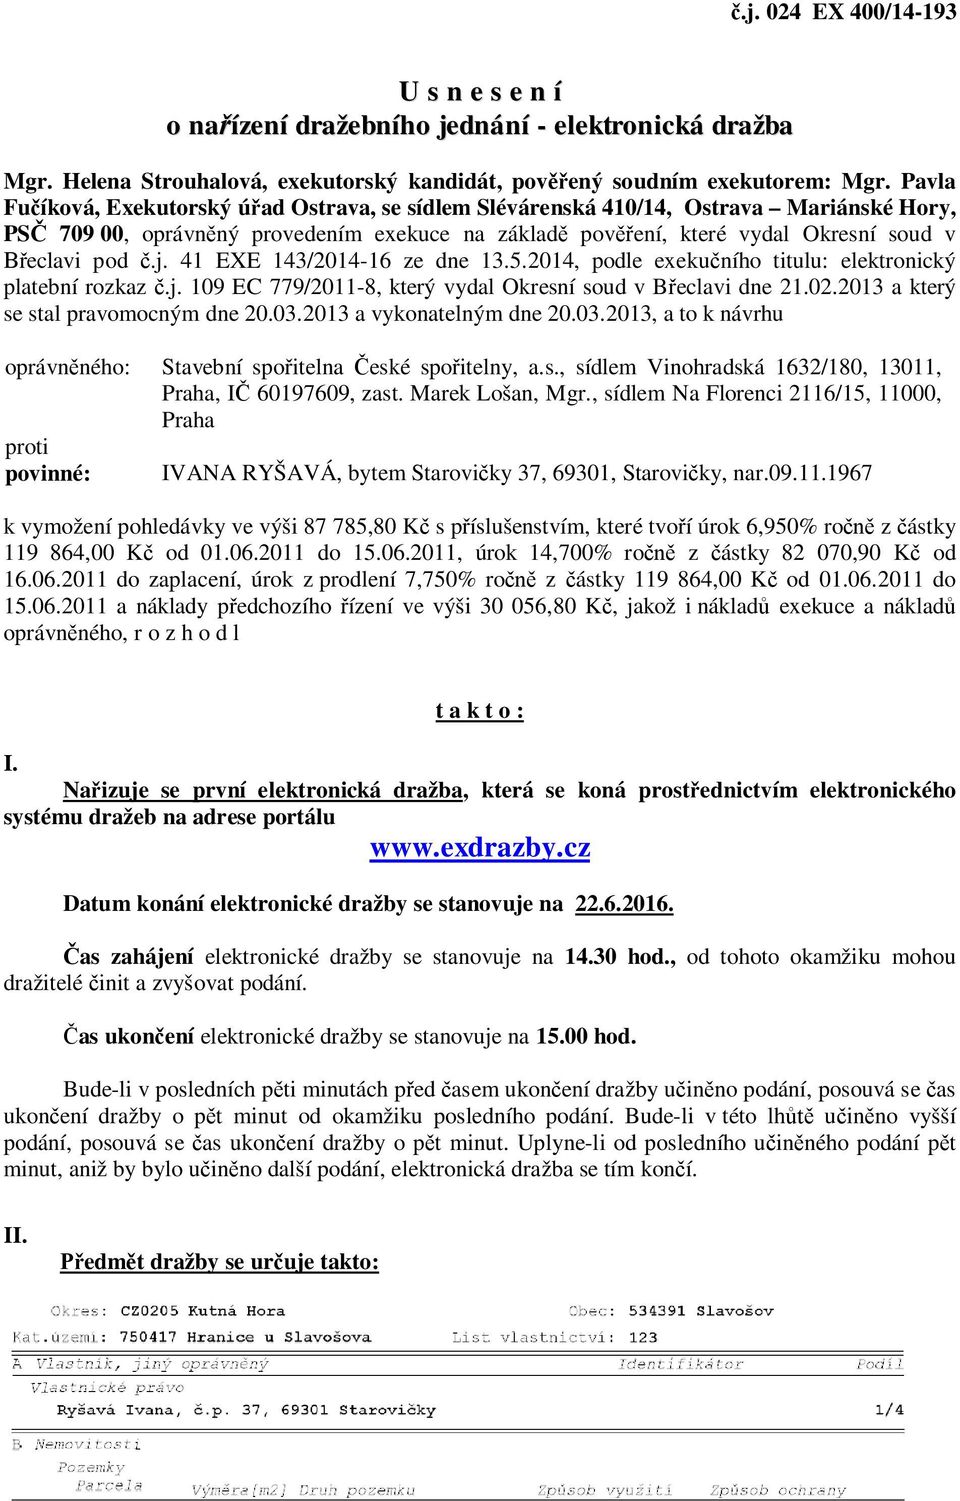 j. 41 EXE 143/2014-16 ze dne 13.5.2014, podle exekučního titulu: elektronický platební rozkaz č.j. 109 EC 779/2011-8, který vydal Okresní soud v Břeclavi dne 21.02.